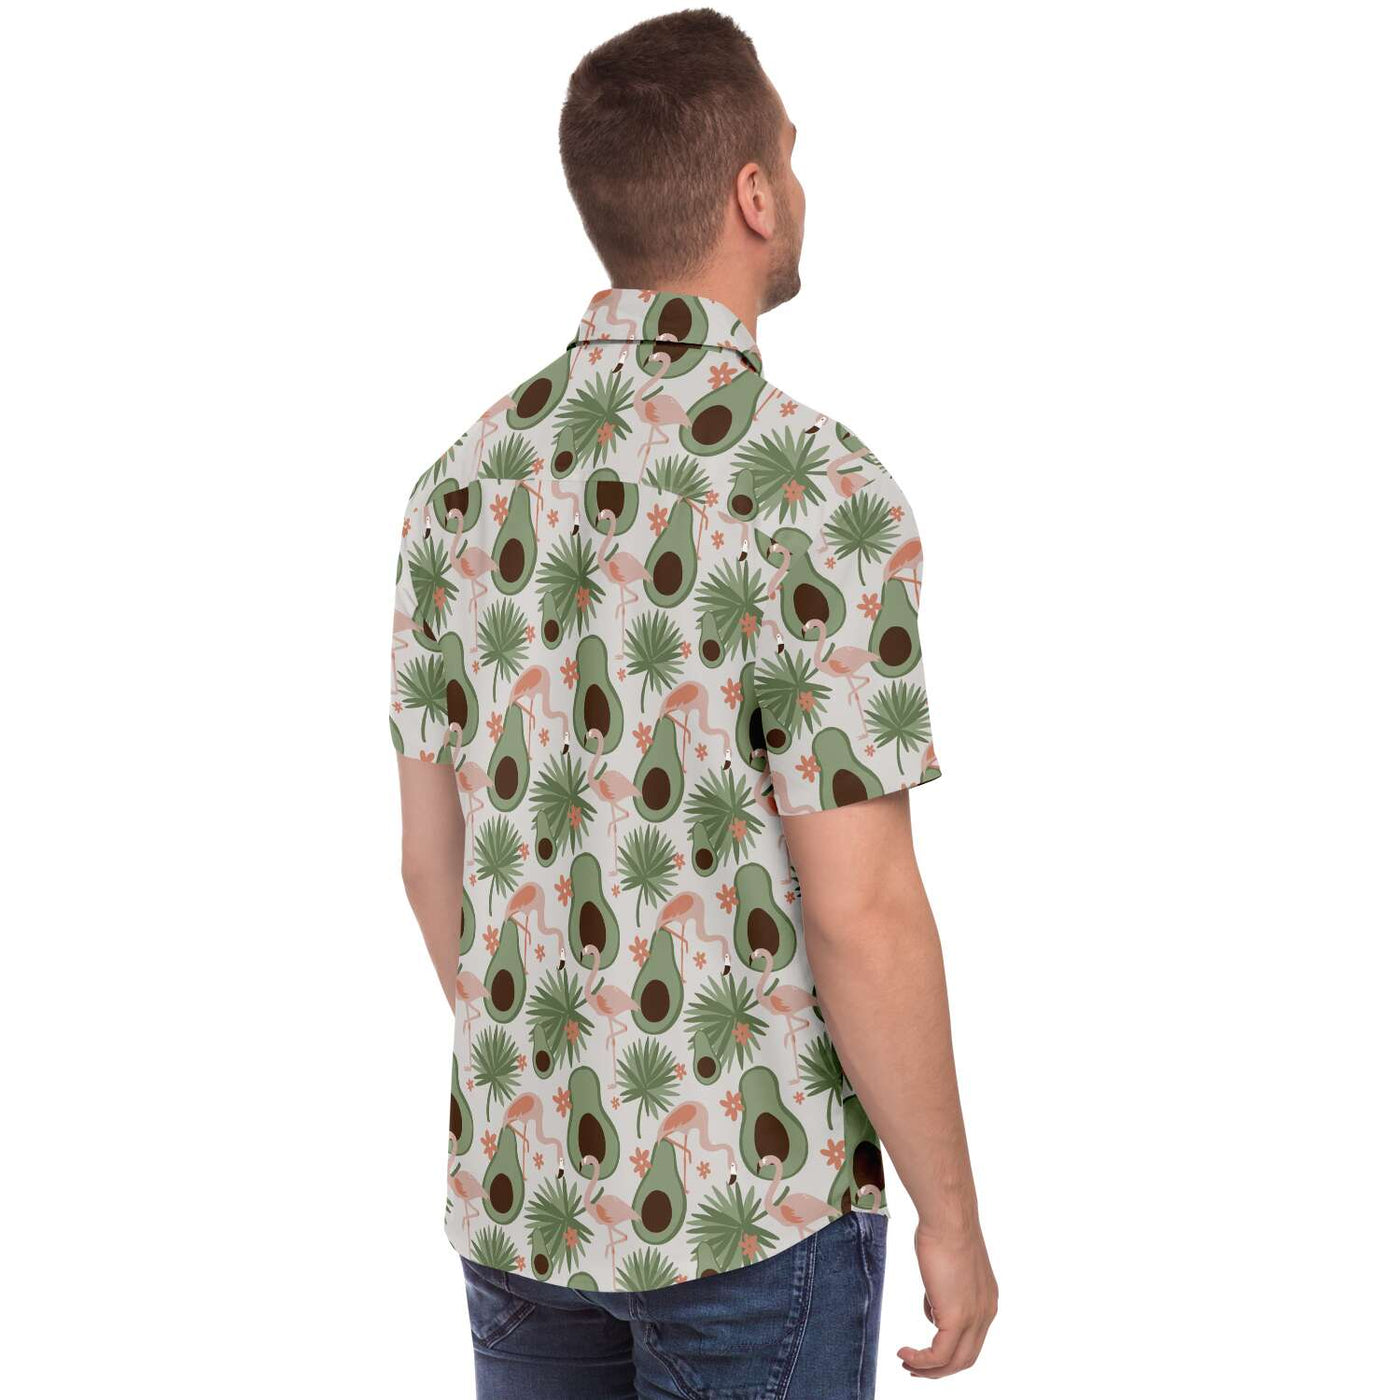 Flamingo Avocado Hawaiian Shirt Subliminator